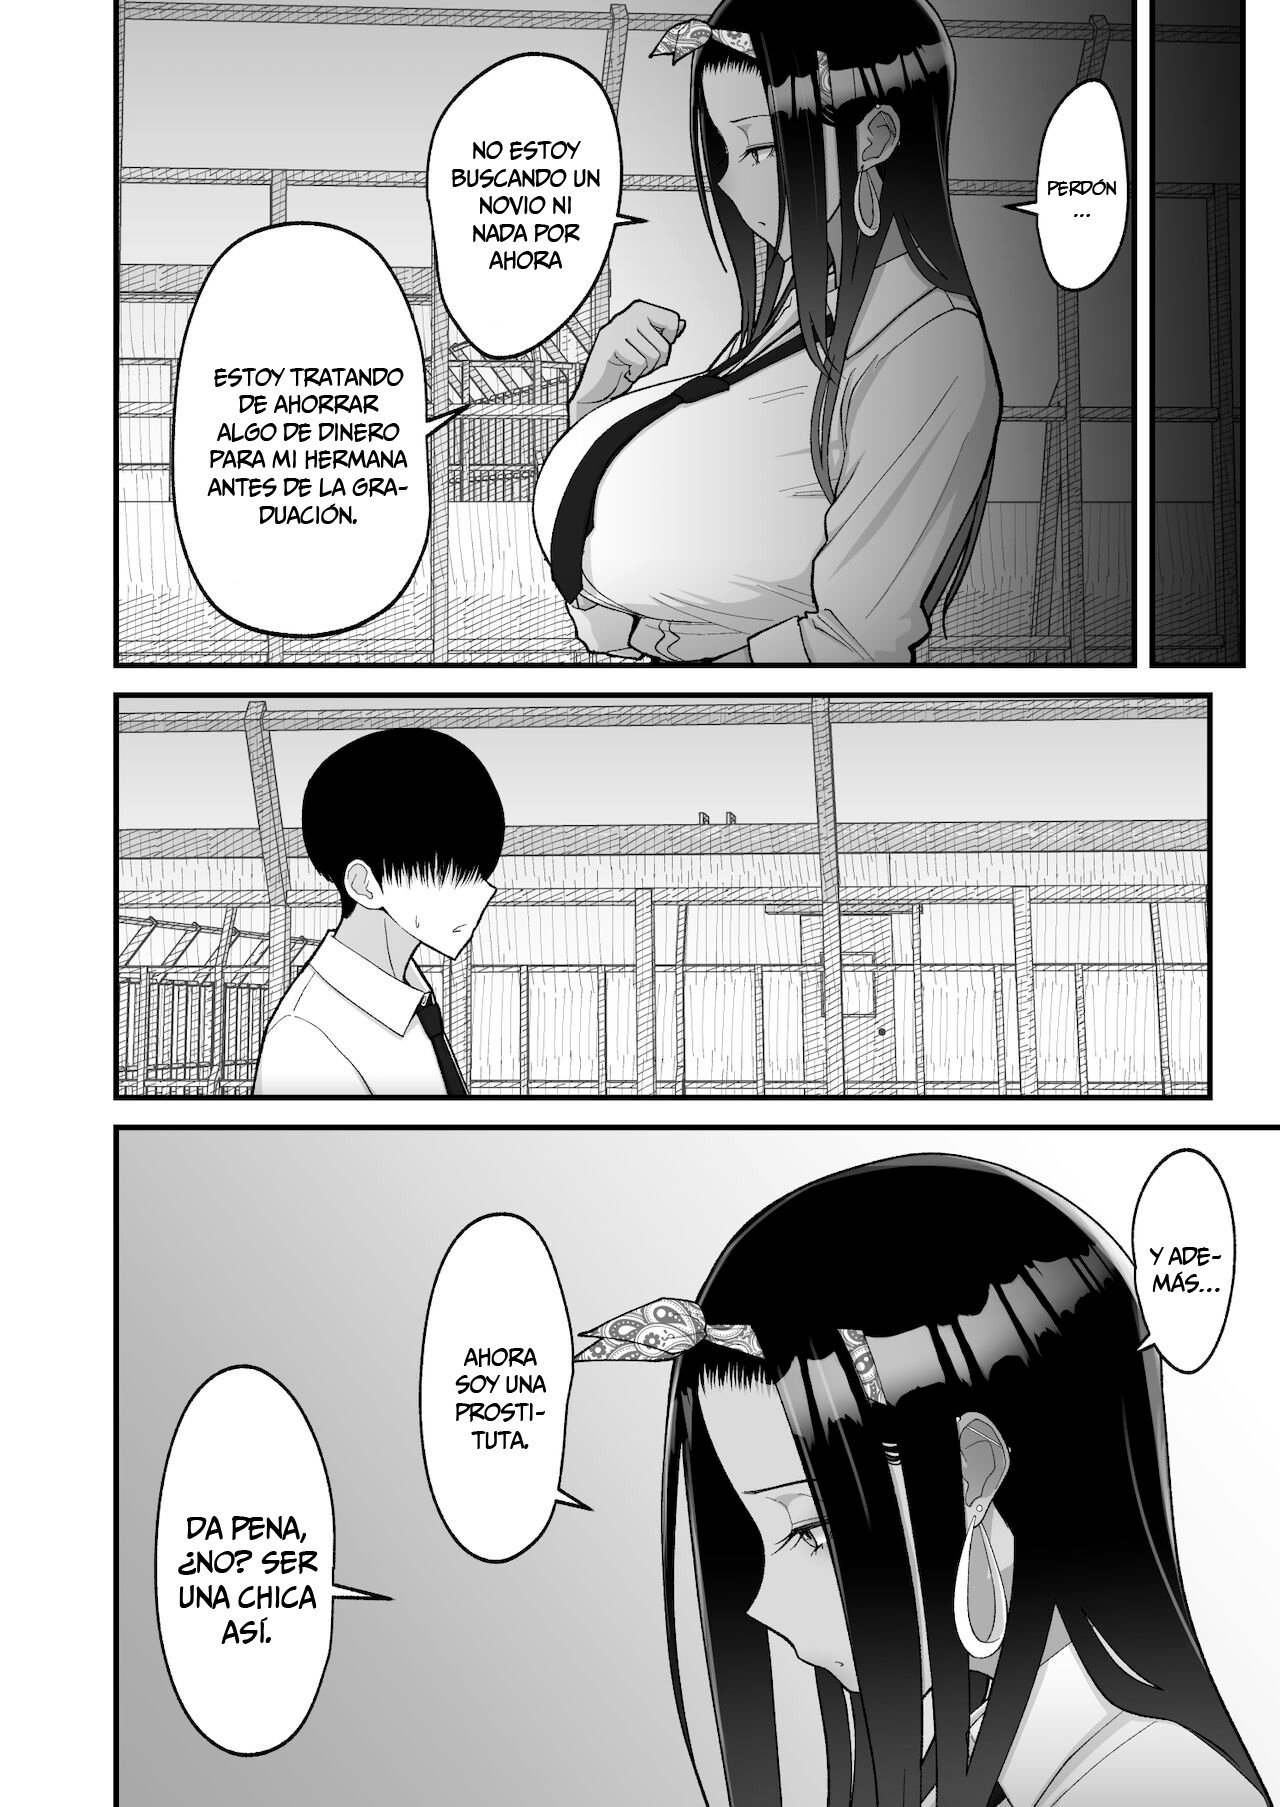 La historia sobre una amorosa gal otaku - 25